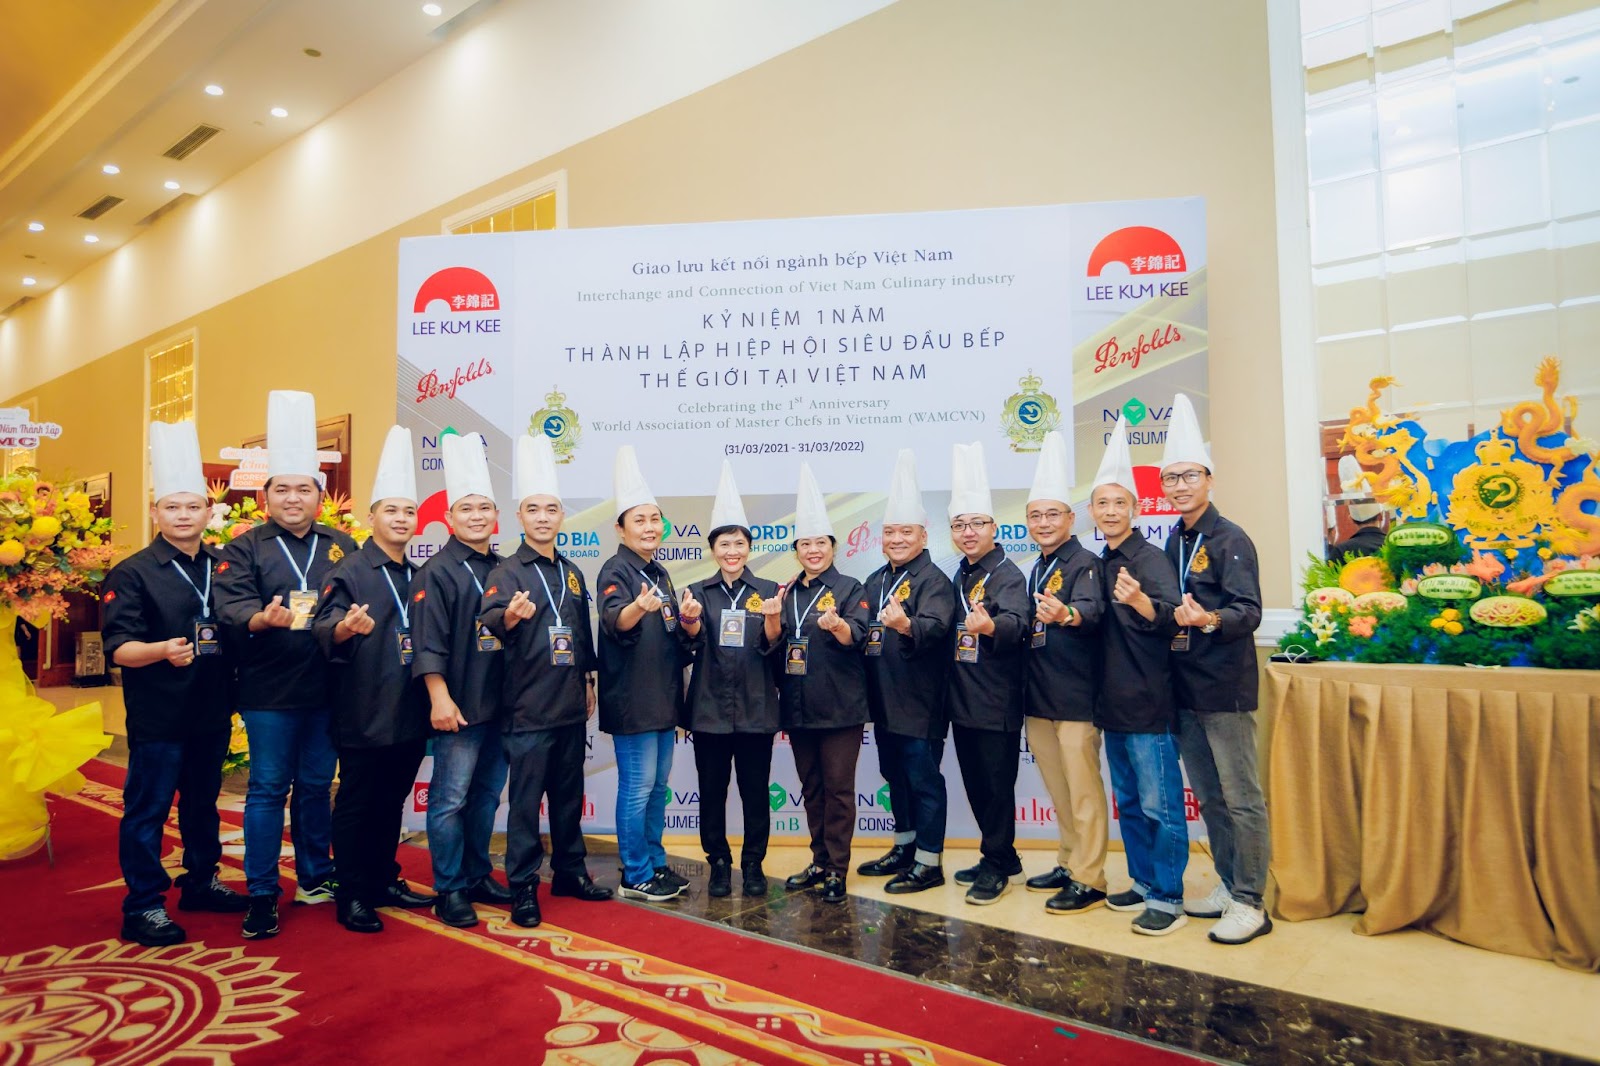 Hiệp hội Siêu đầu bếp Thế giới tại Việt Nam kỷ niệm 1 năm thành lập - 5